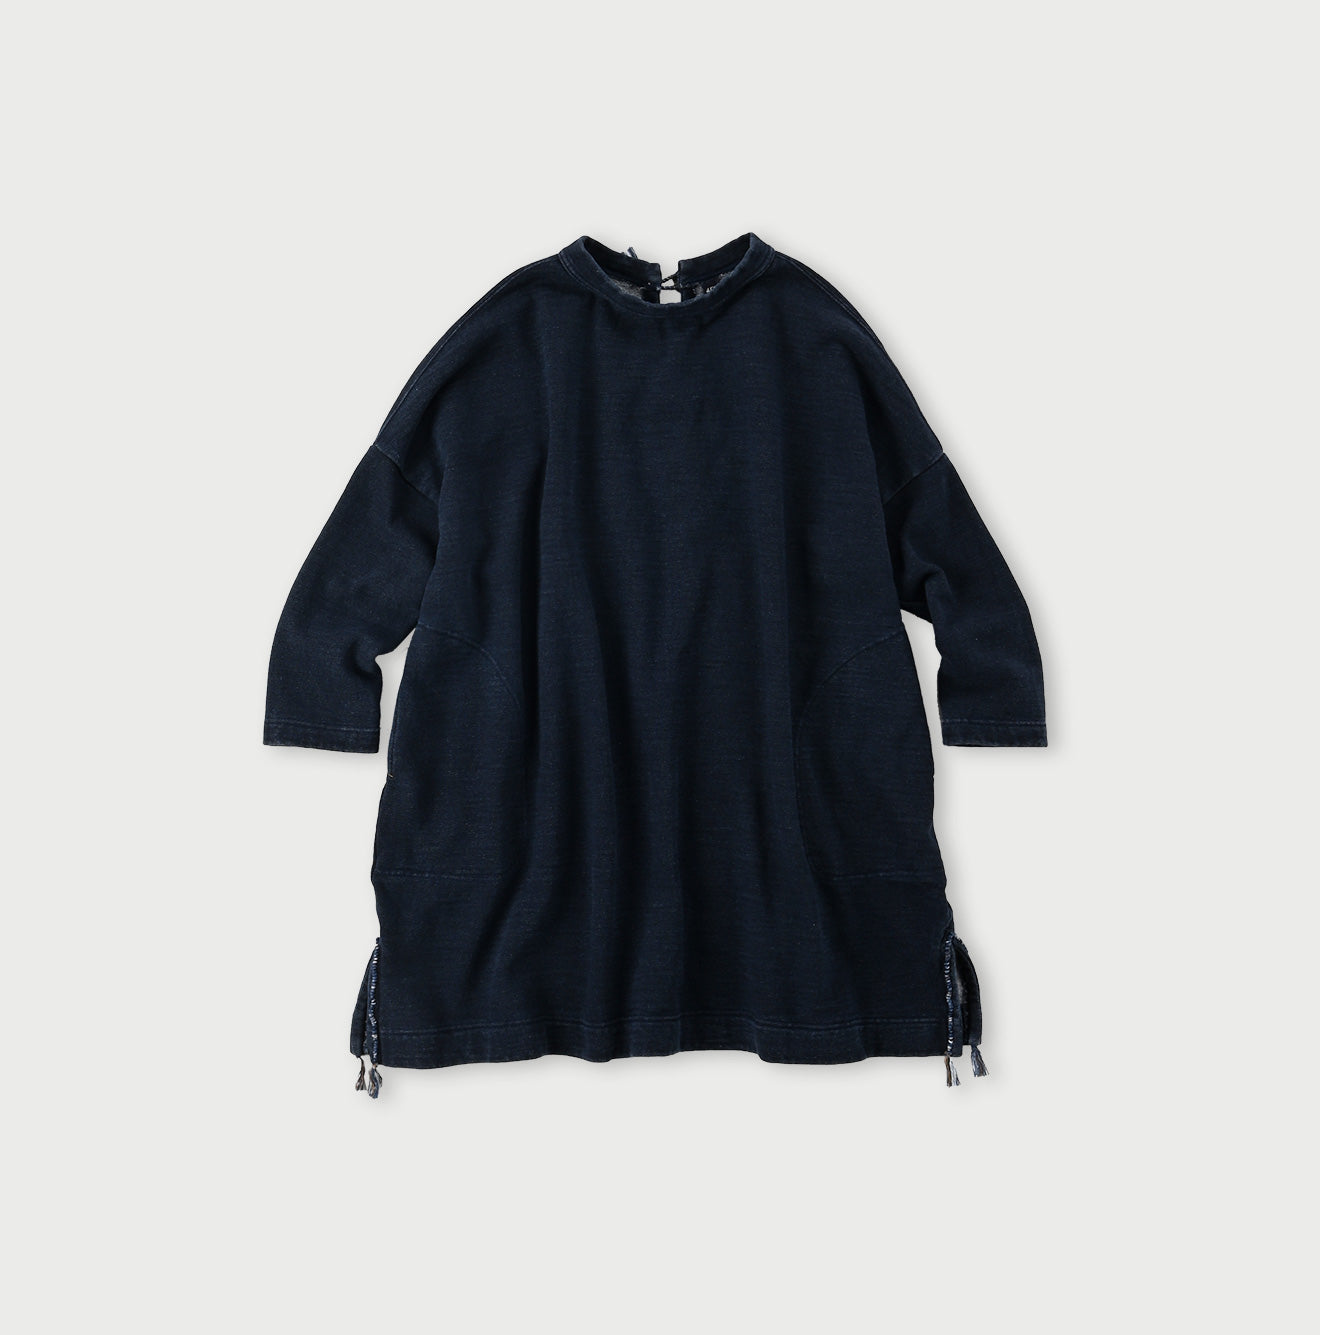 ONEONE Cotton Fleece Tunic – 45R Global